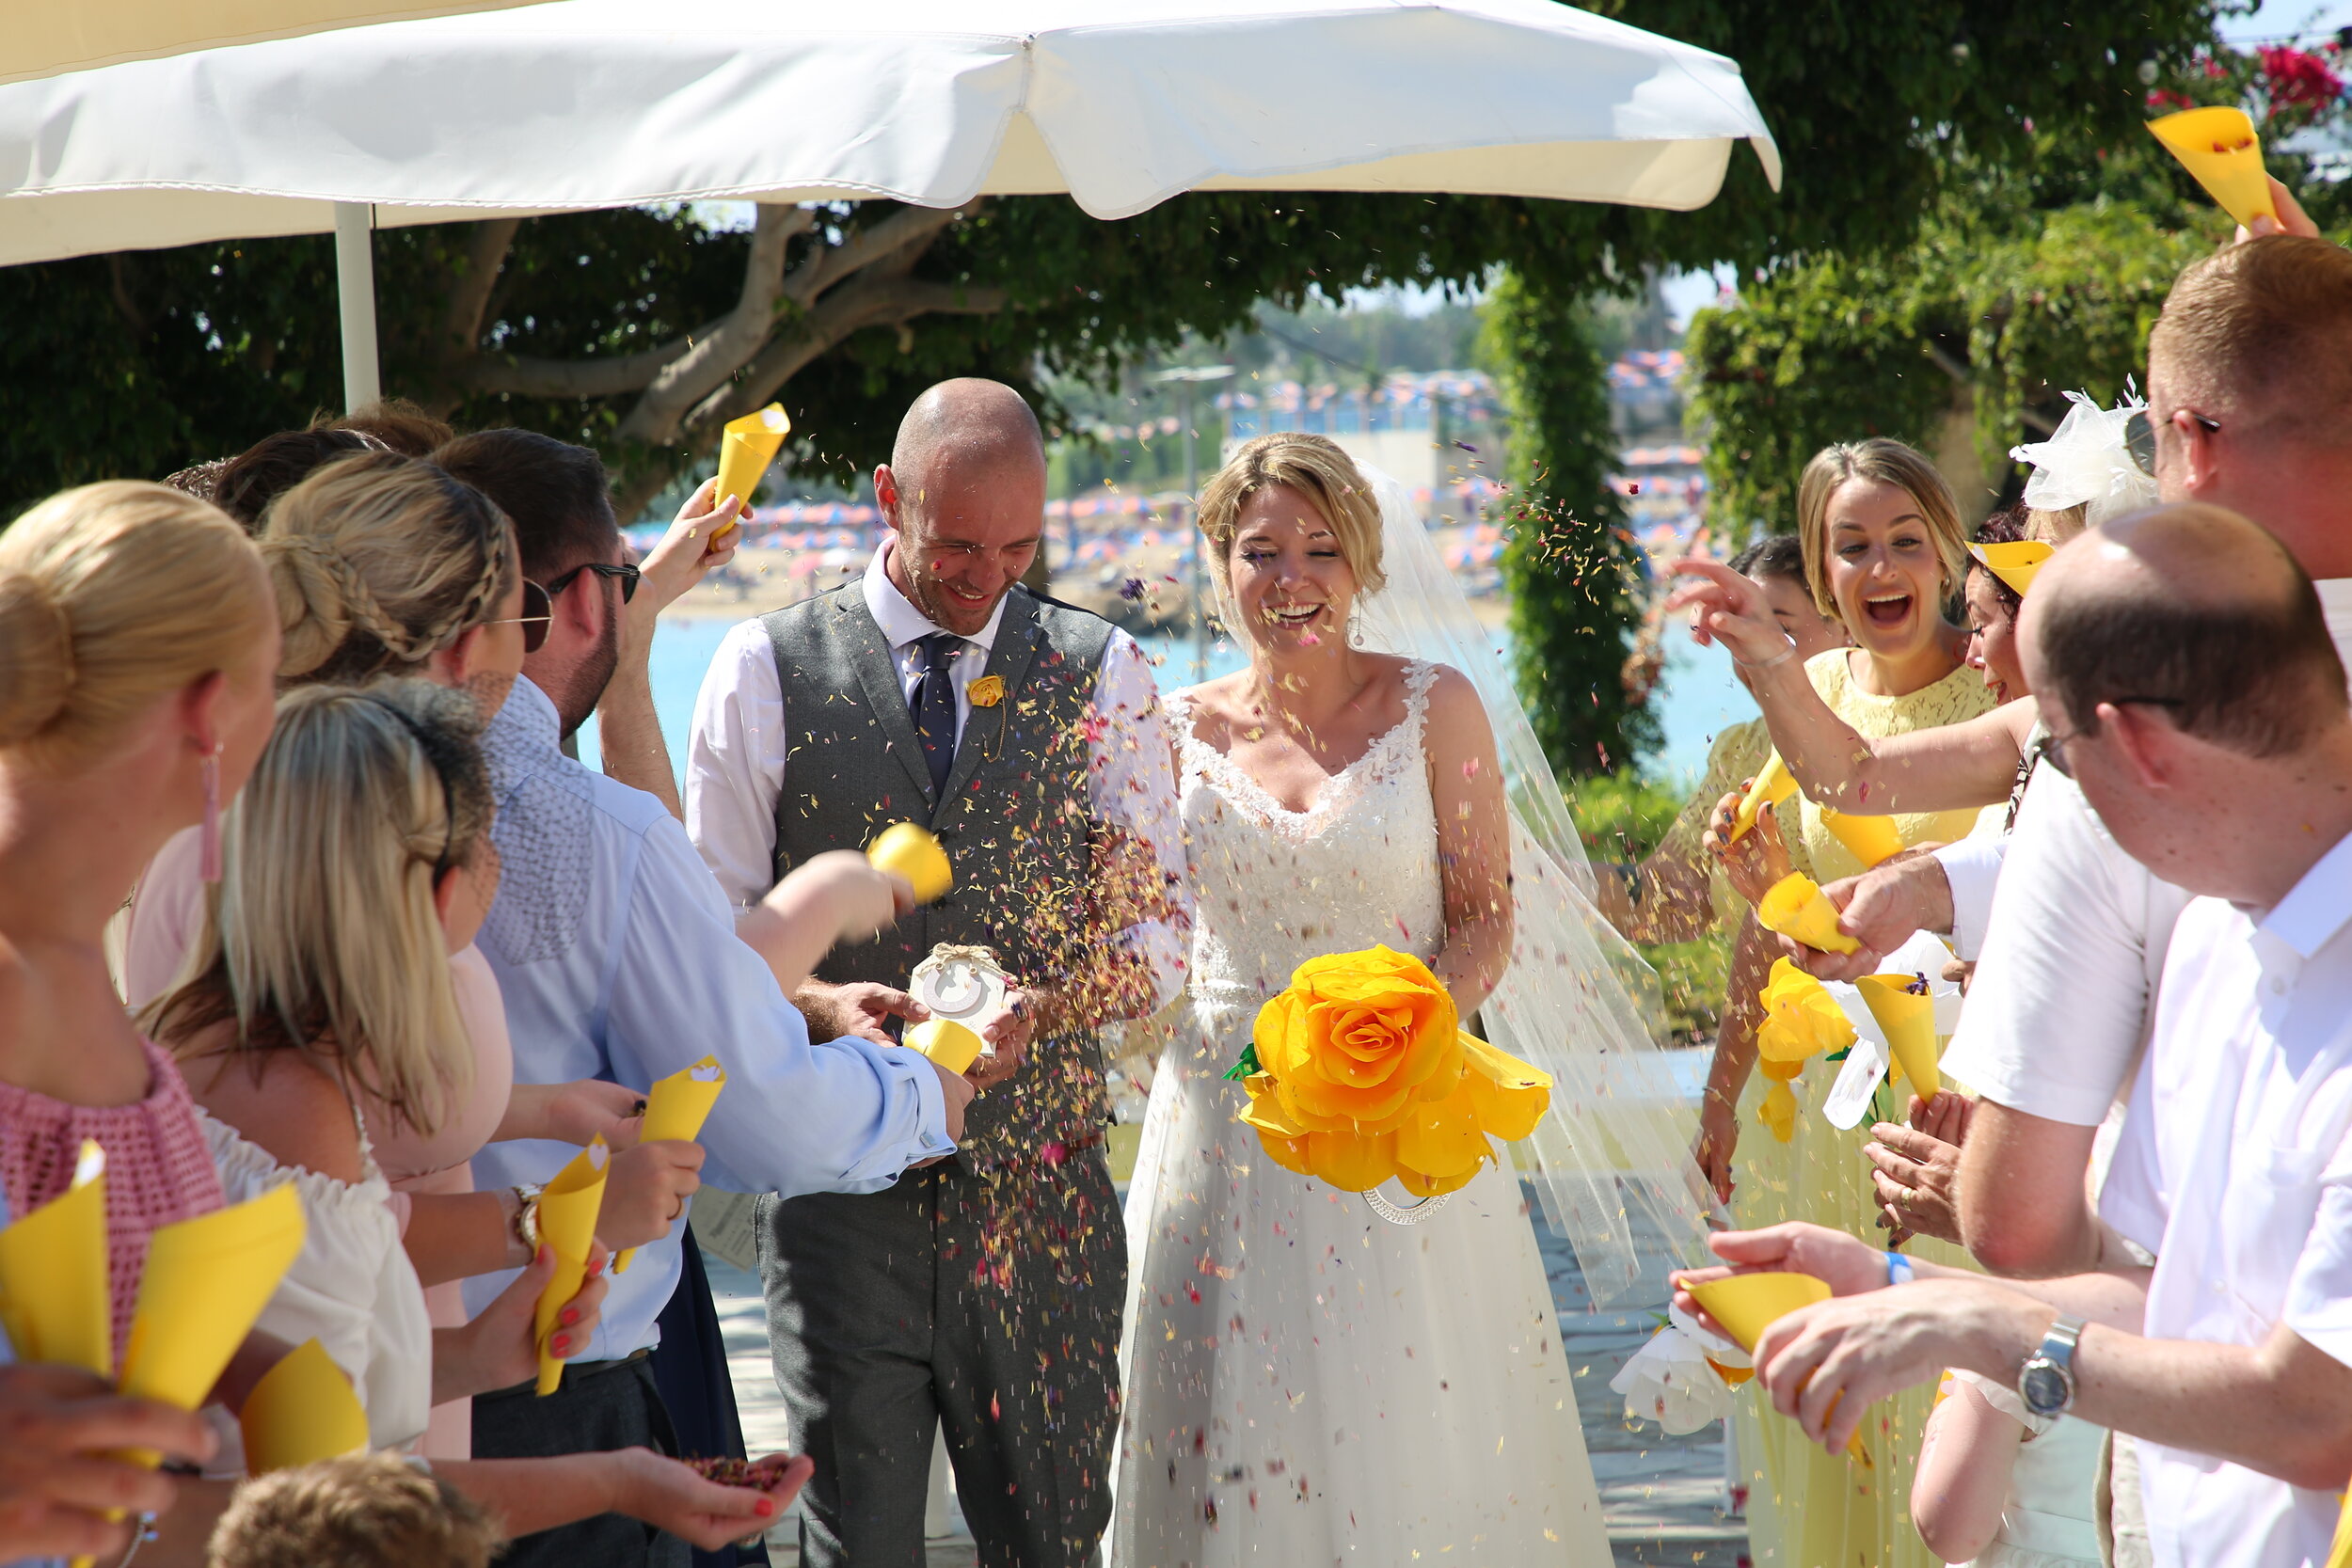 Best of Cyprus Weddings - Wedding Photography